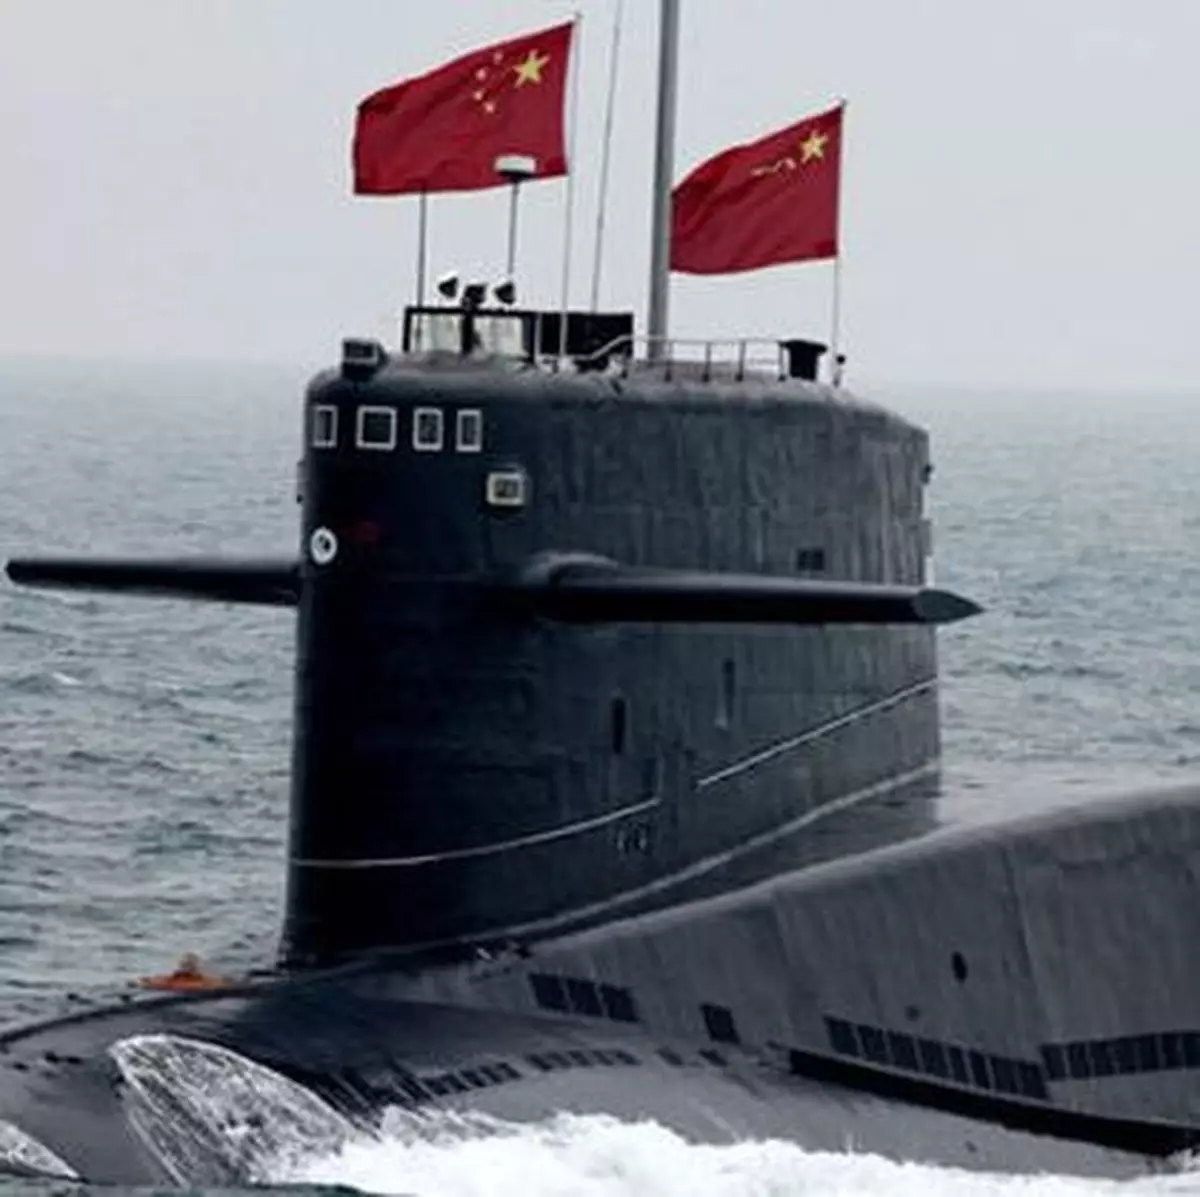 外媒: 中國暗造潛艇基地 瞞過美間諜衛星